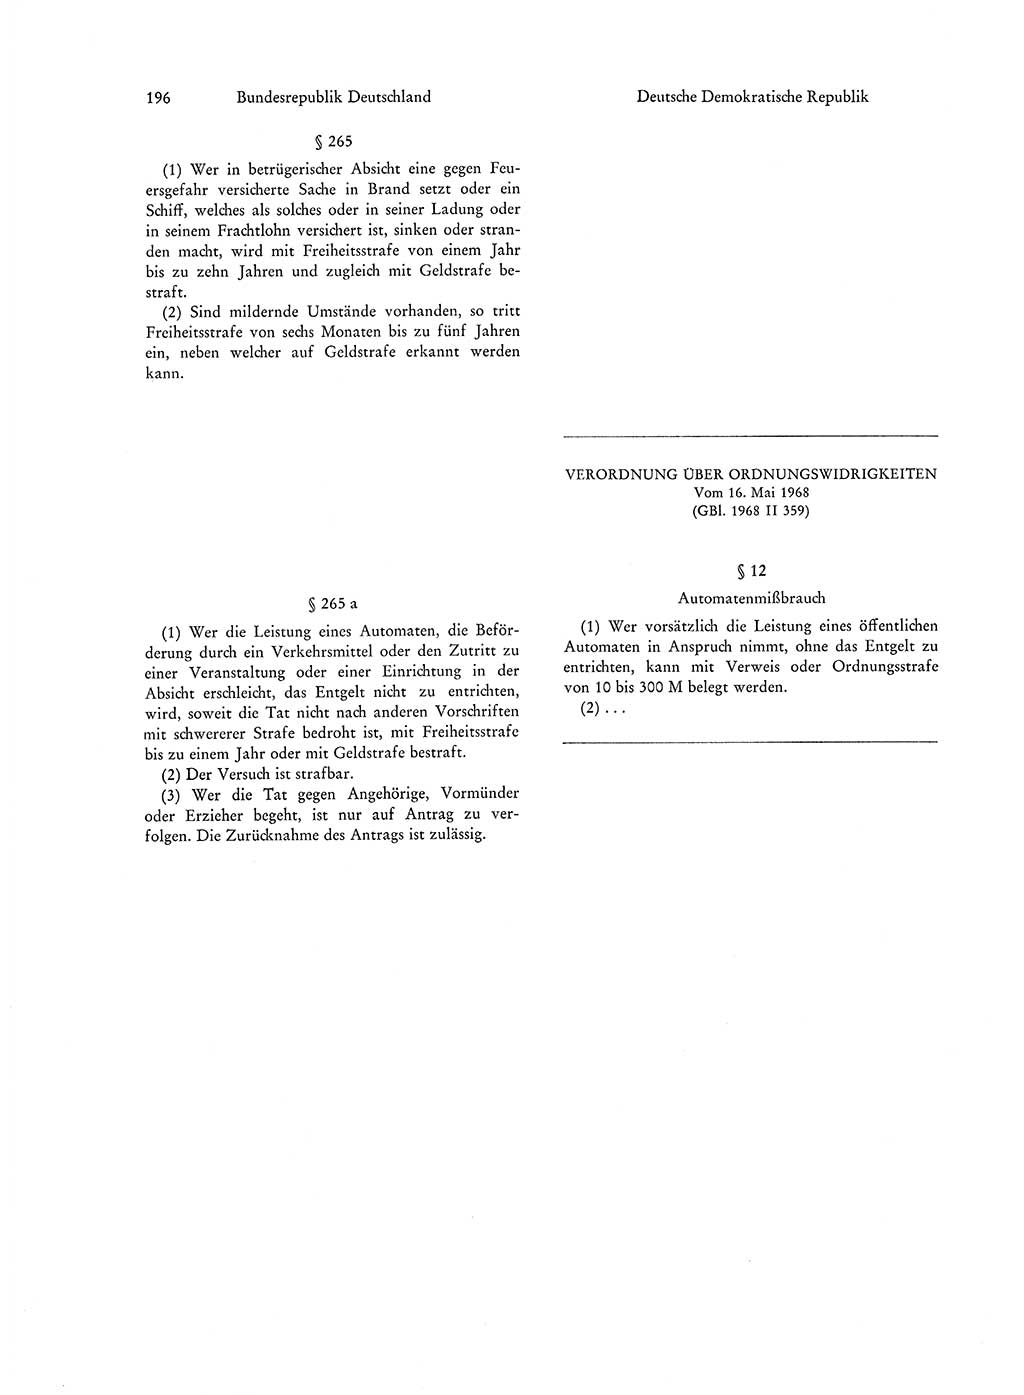 Strafgesetzgebung in Deutschland [Bundesrepublik Deutschland (BRD) und Deutsche Demokratische Republik (DDR)] 1972, Seite 196 (Str.-Ges. Dtl. StGB BRD DDR 1972, S. 196)